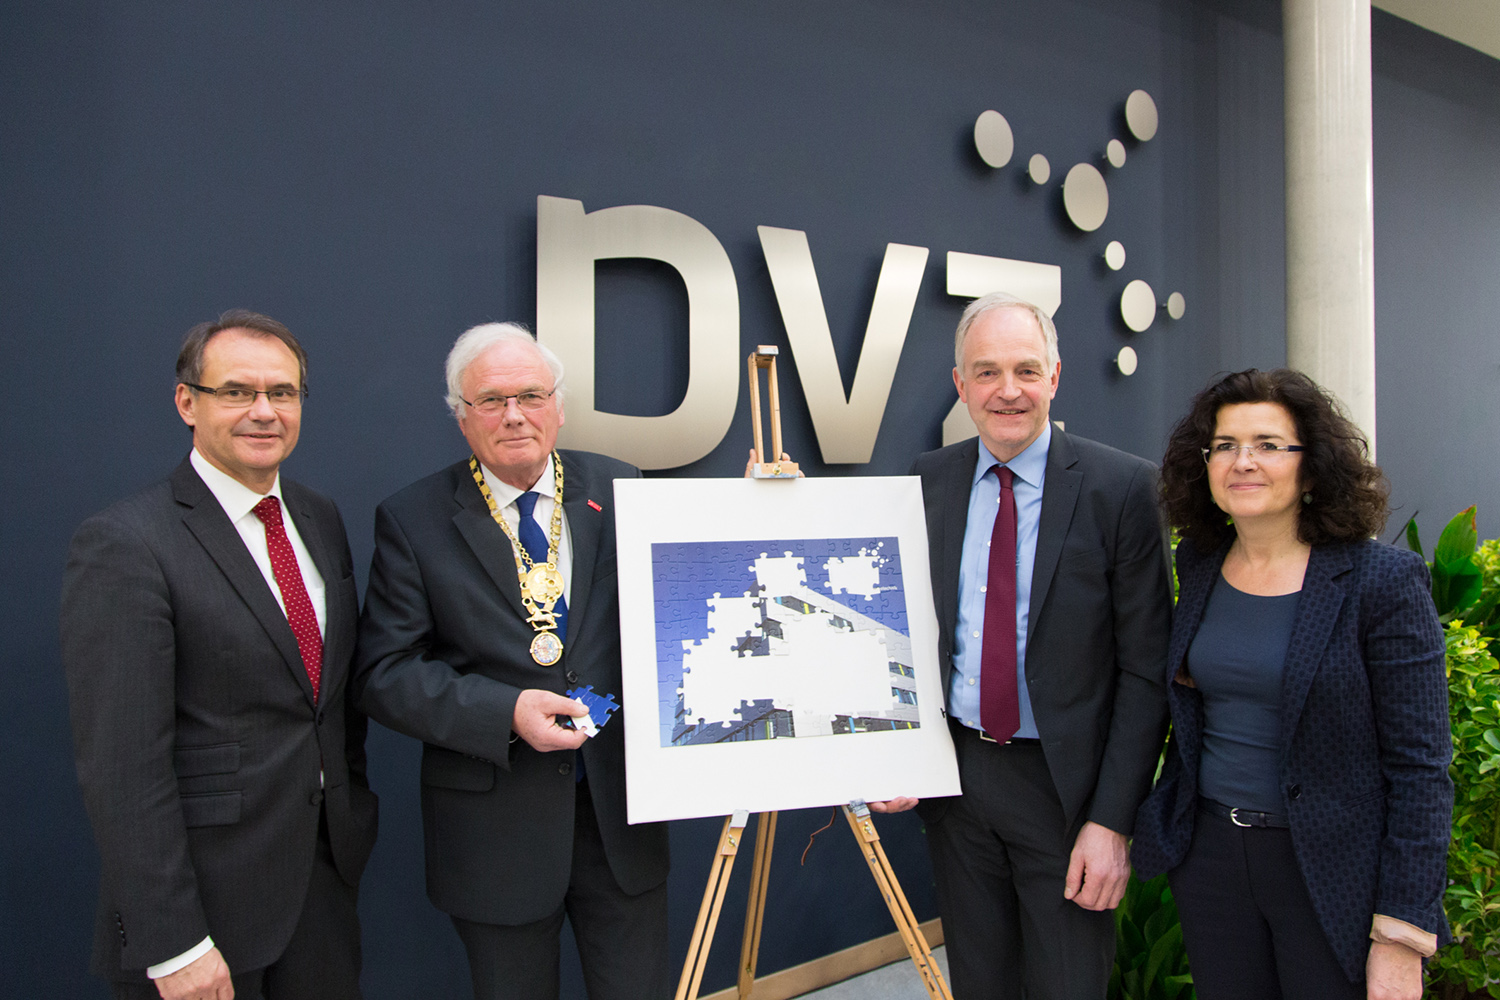 Das Bild zeigt die vier Personen vor einer Staffelei mit einem Puzzle des PVZ. Einige Puzzlestücke fehlen noch, eines davon hält der TU-Braunschweig Präsident.